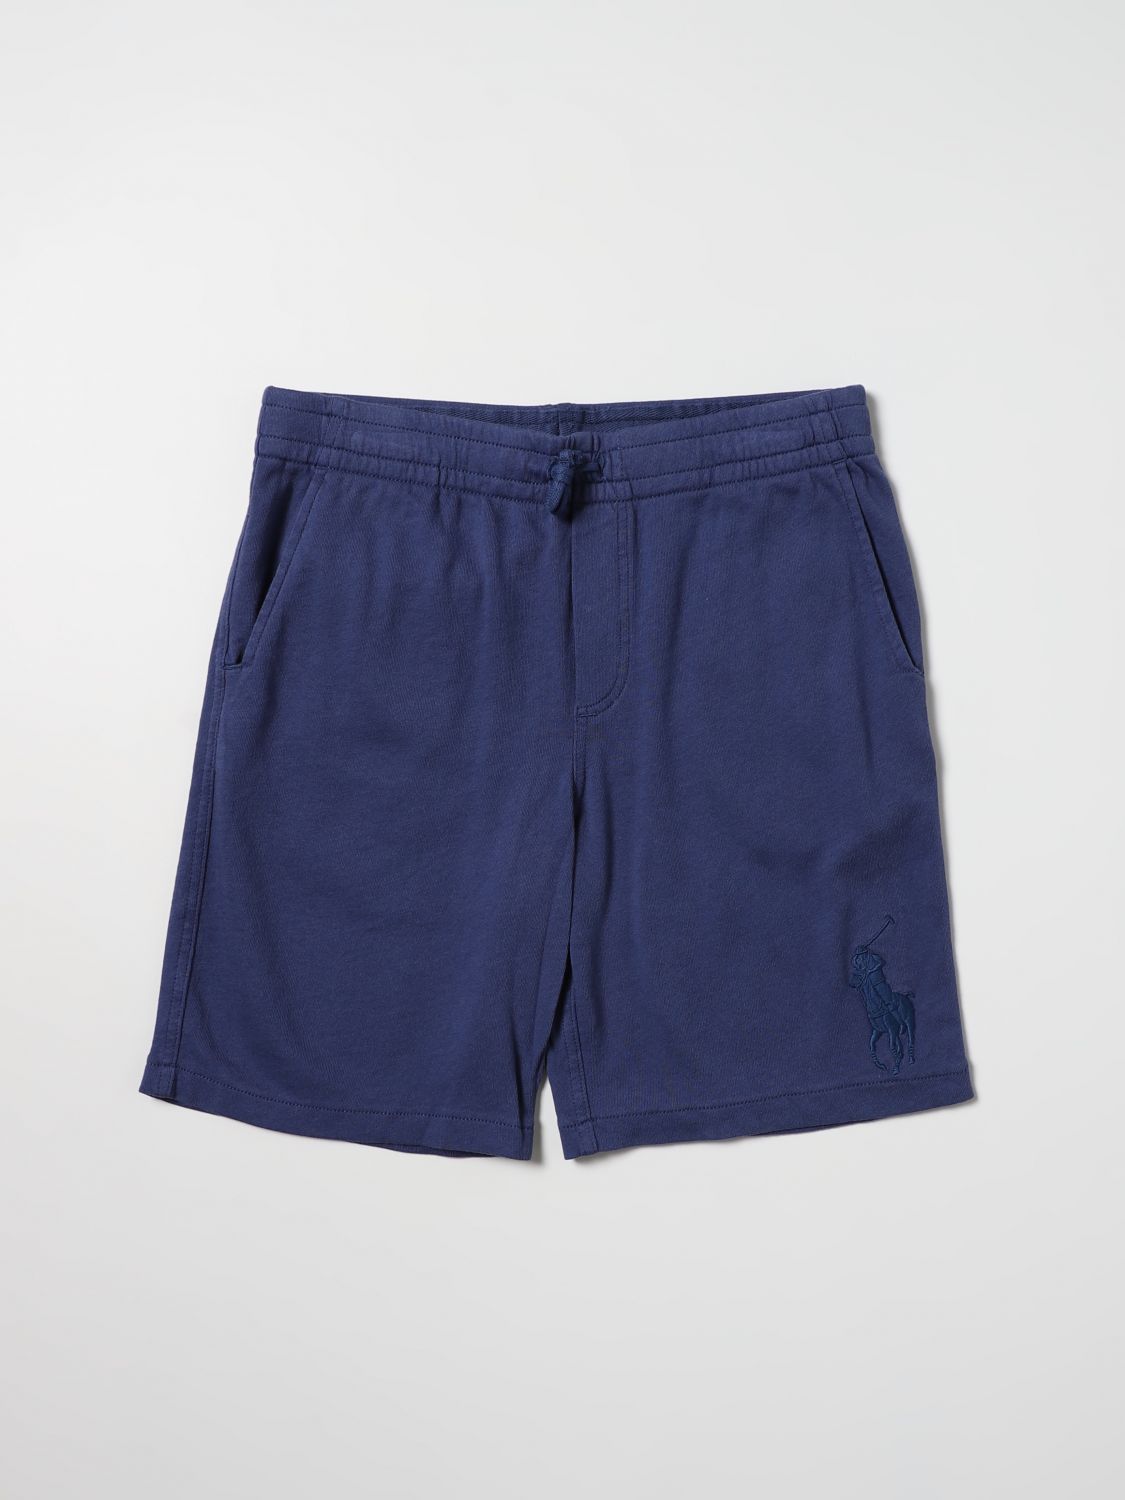 Pantalón corto Polo Ralph Lauren: Pantalón corto Polo Ralph Lauren para niño azul oscuro 1